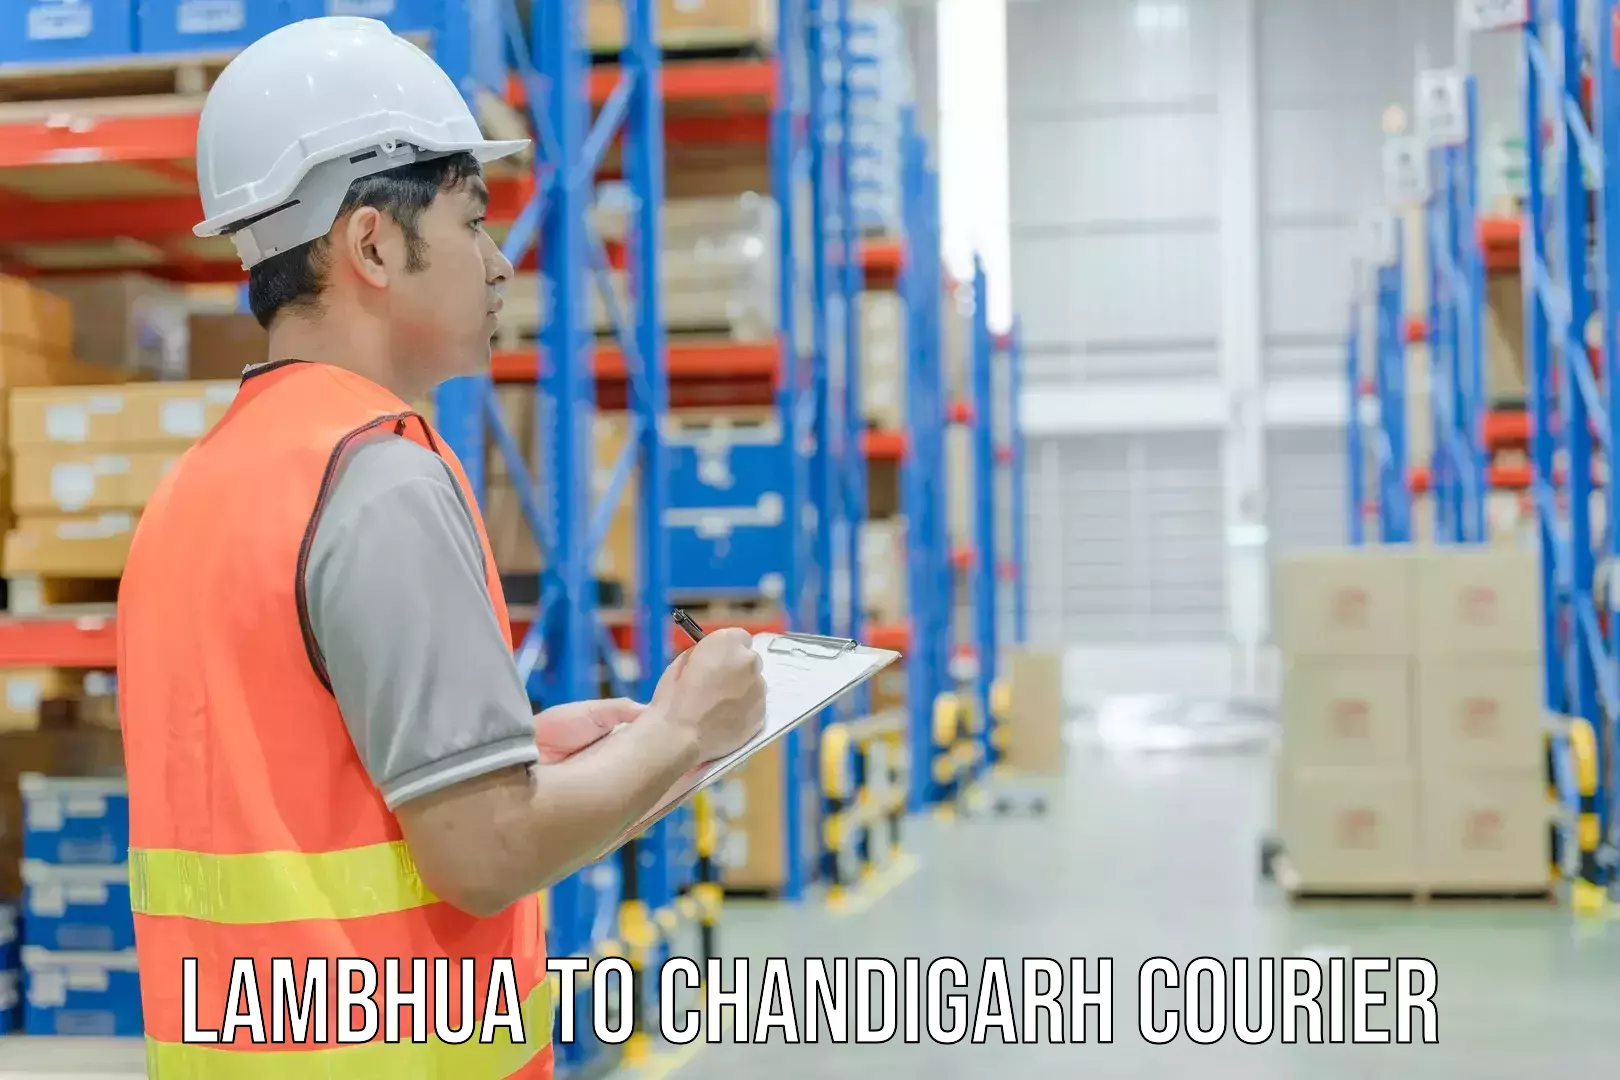 Next-day freight services Lambhua to Chandigarh